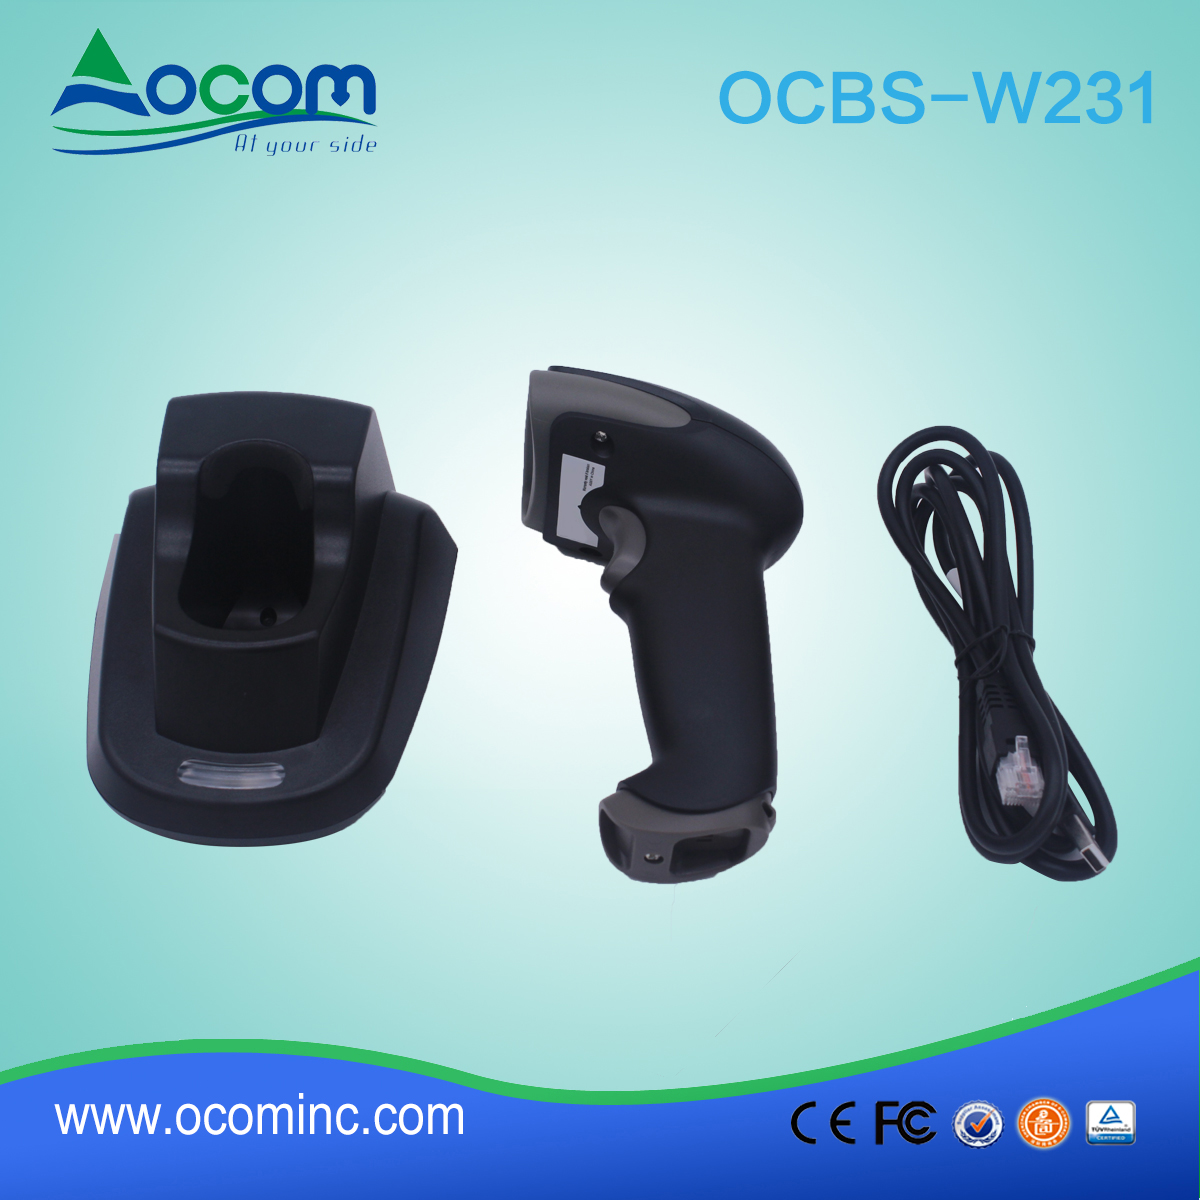 (OCBS-W231) 433Mhz 2d draadloze barcodescanner met craddle te koop